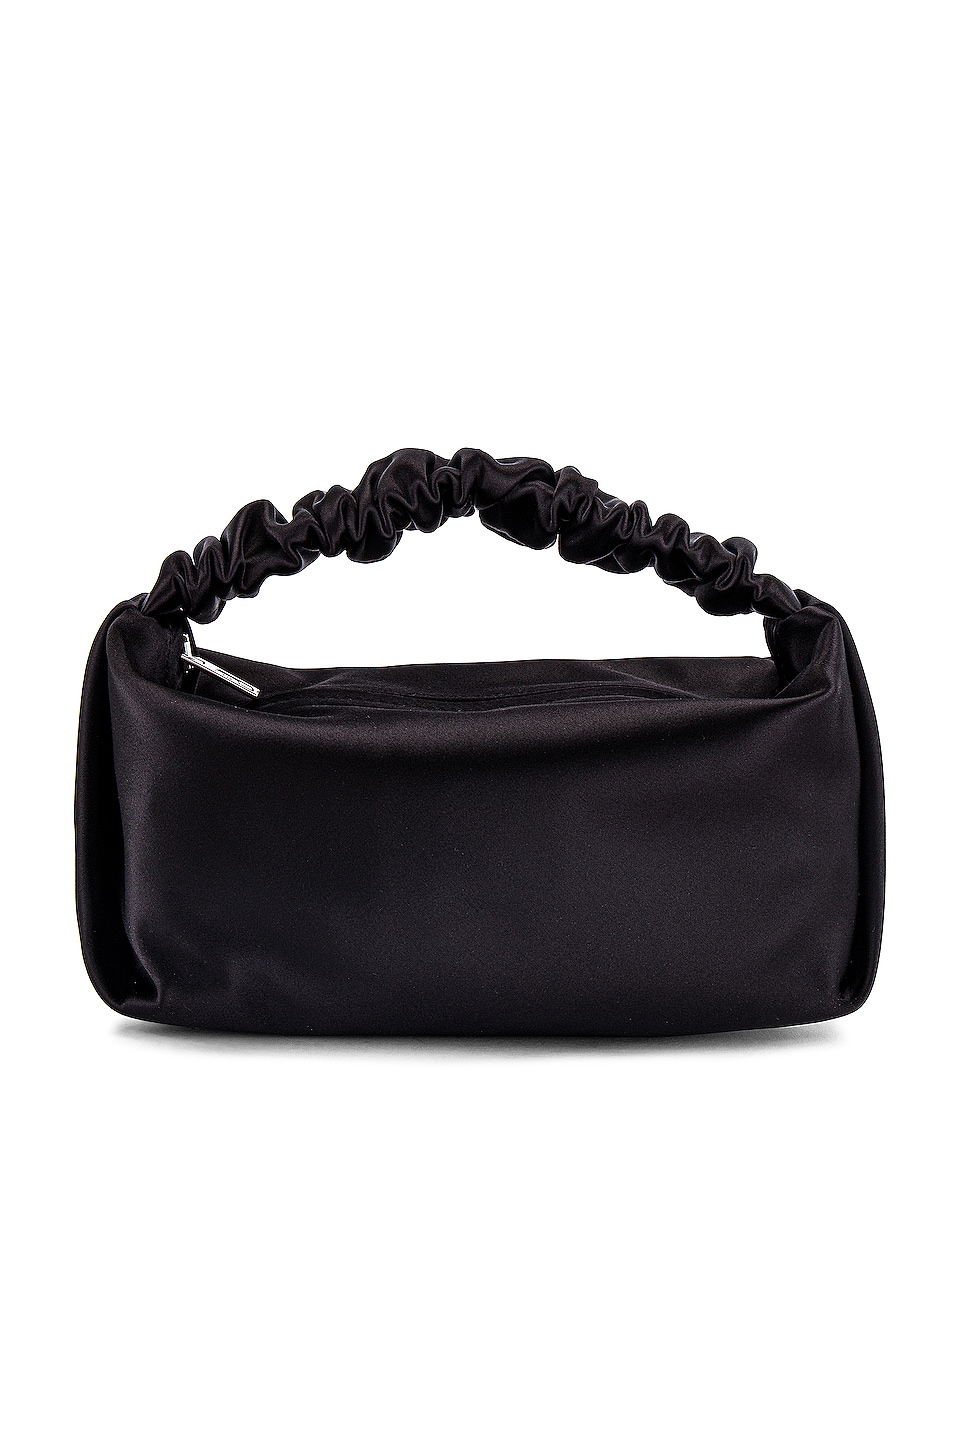 Alexander Wang Scrunchie Mini Bag in Black Satin | REVOLVE